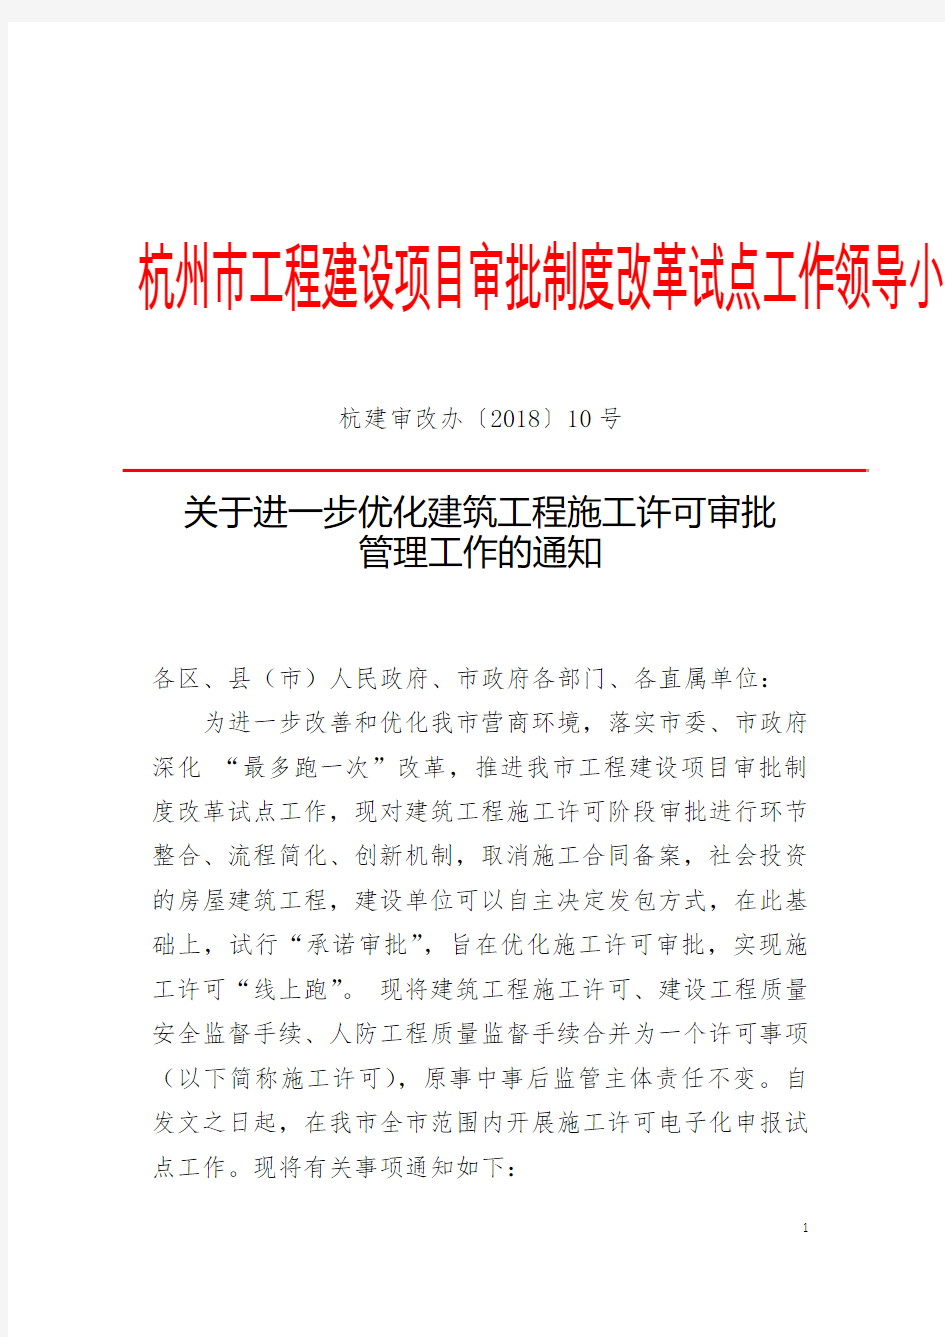 杭州市工程建设项目审批制度改革试点工作领导小组办公室文件